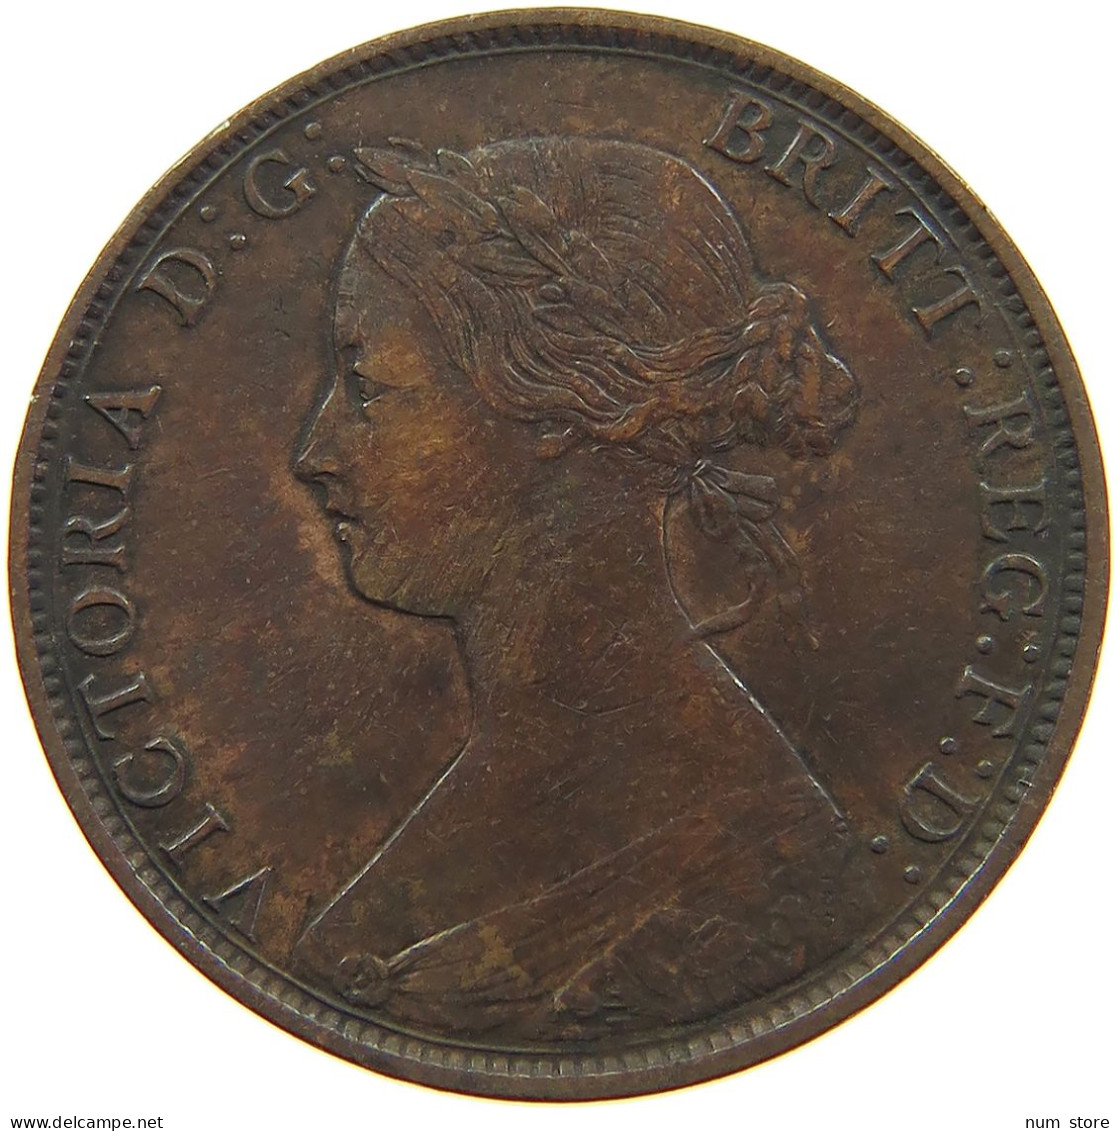 GREAT BRITAIN HALFPENNY 1861 Victoria 1837-1901 #c061 0031 - C. 1/2 Penny